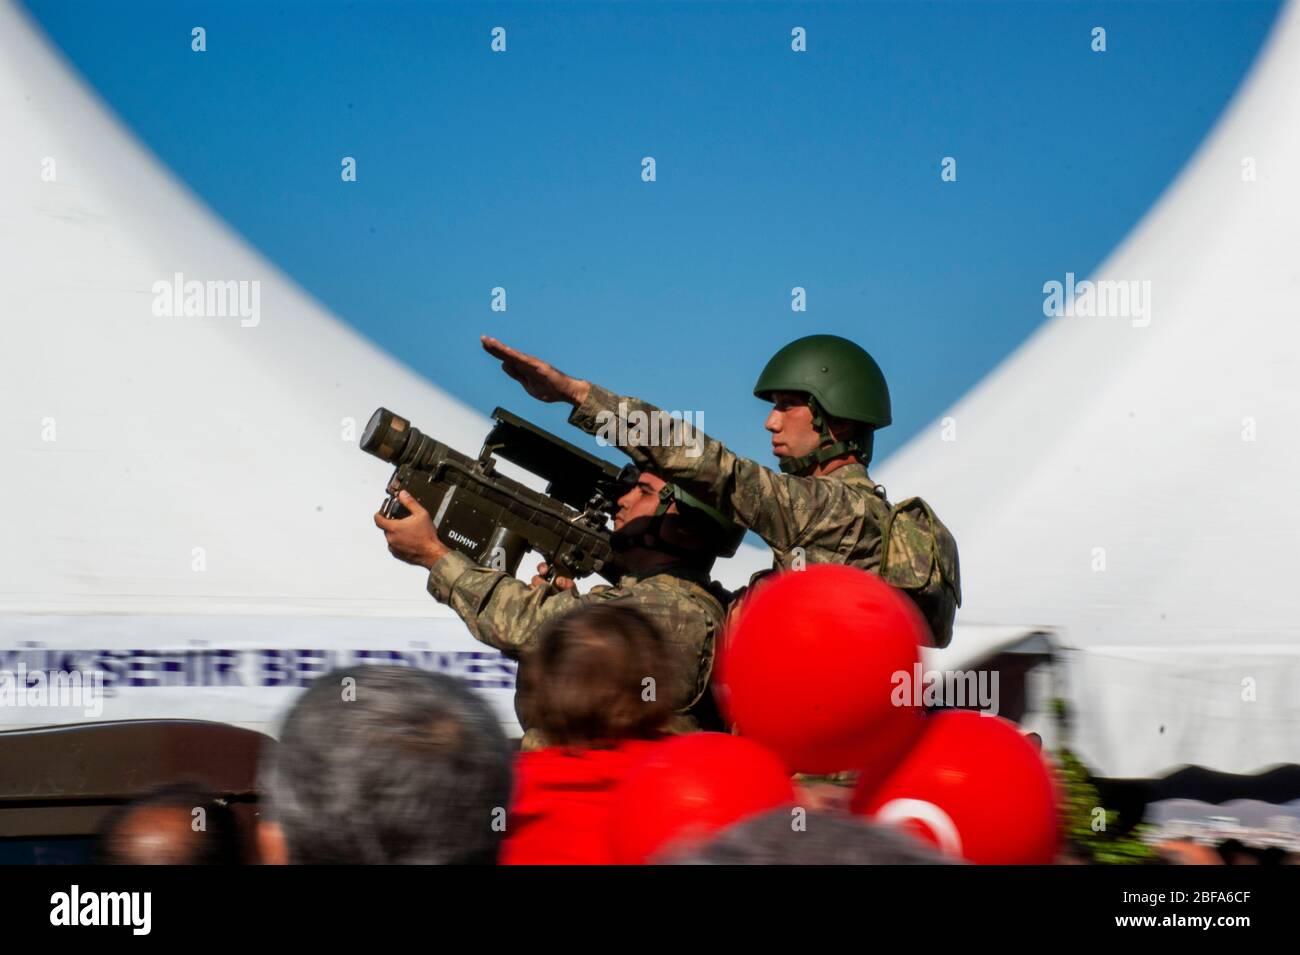 Izmir, Turchia - 29 ottobre 2015: Due soldati con un lanciarazzi uno è il suo obiettivo. Foto Stock